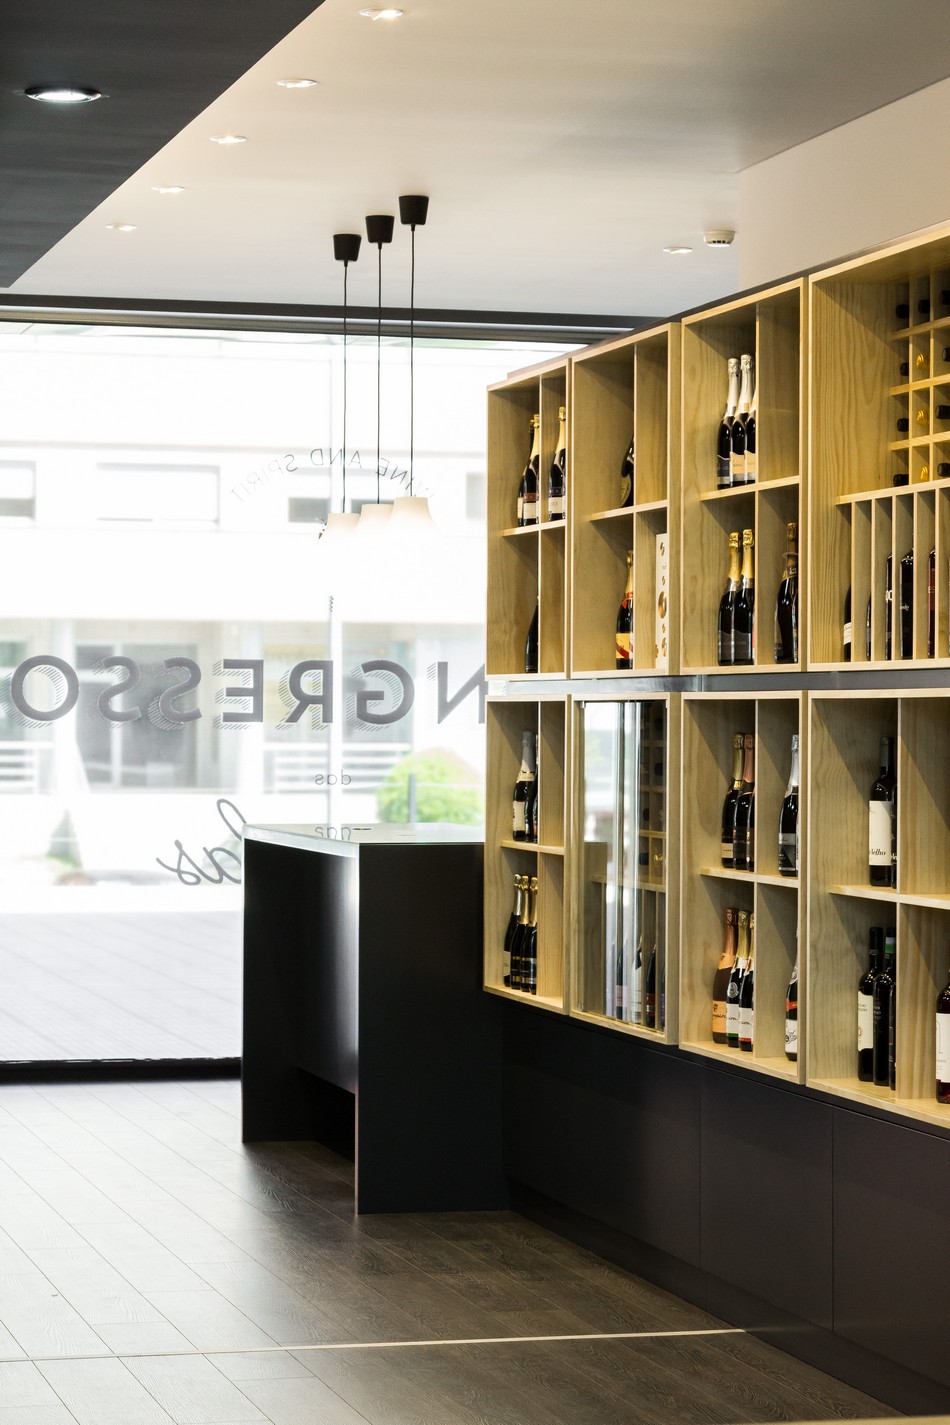 Выбирай вино по-португальски – новый дизайн магазина алкогольной продукции the bottles congress